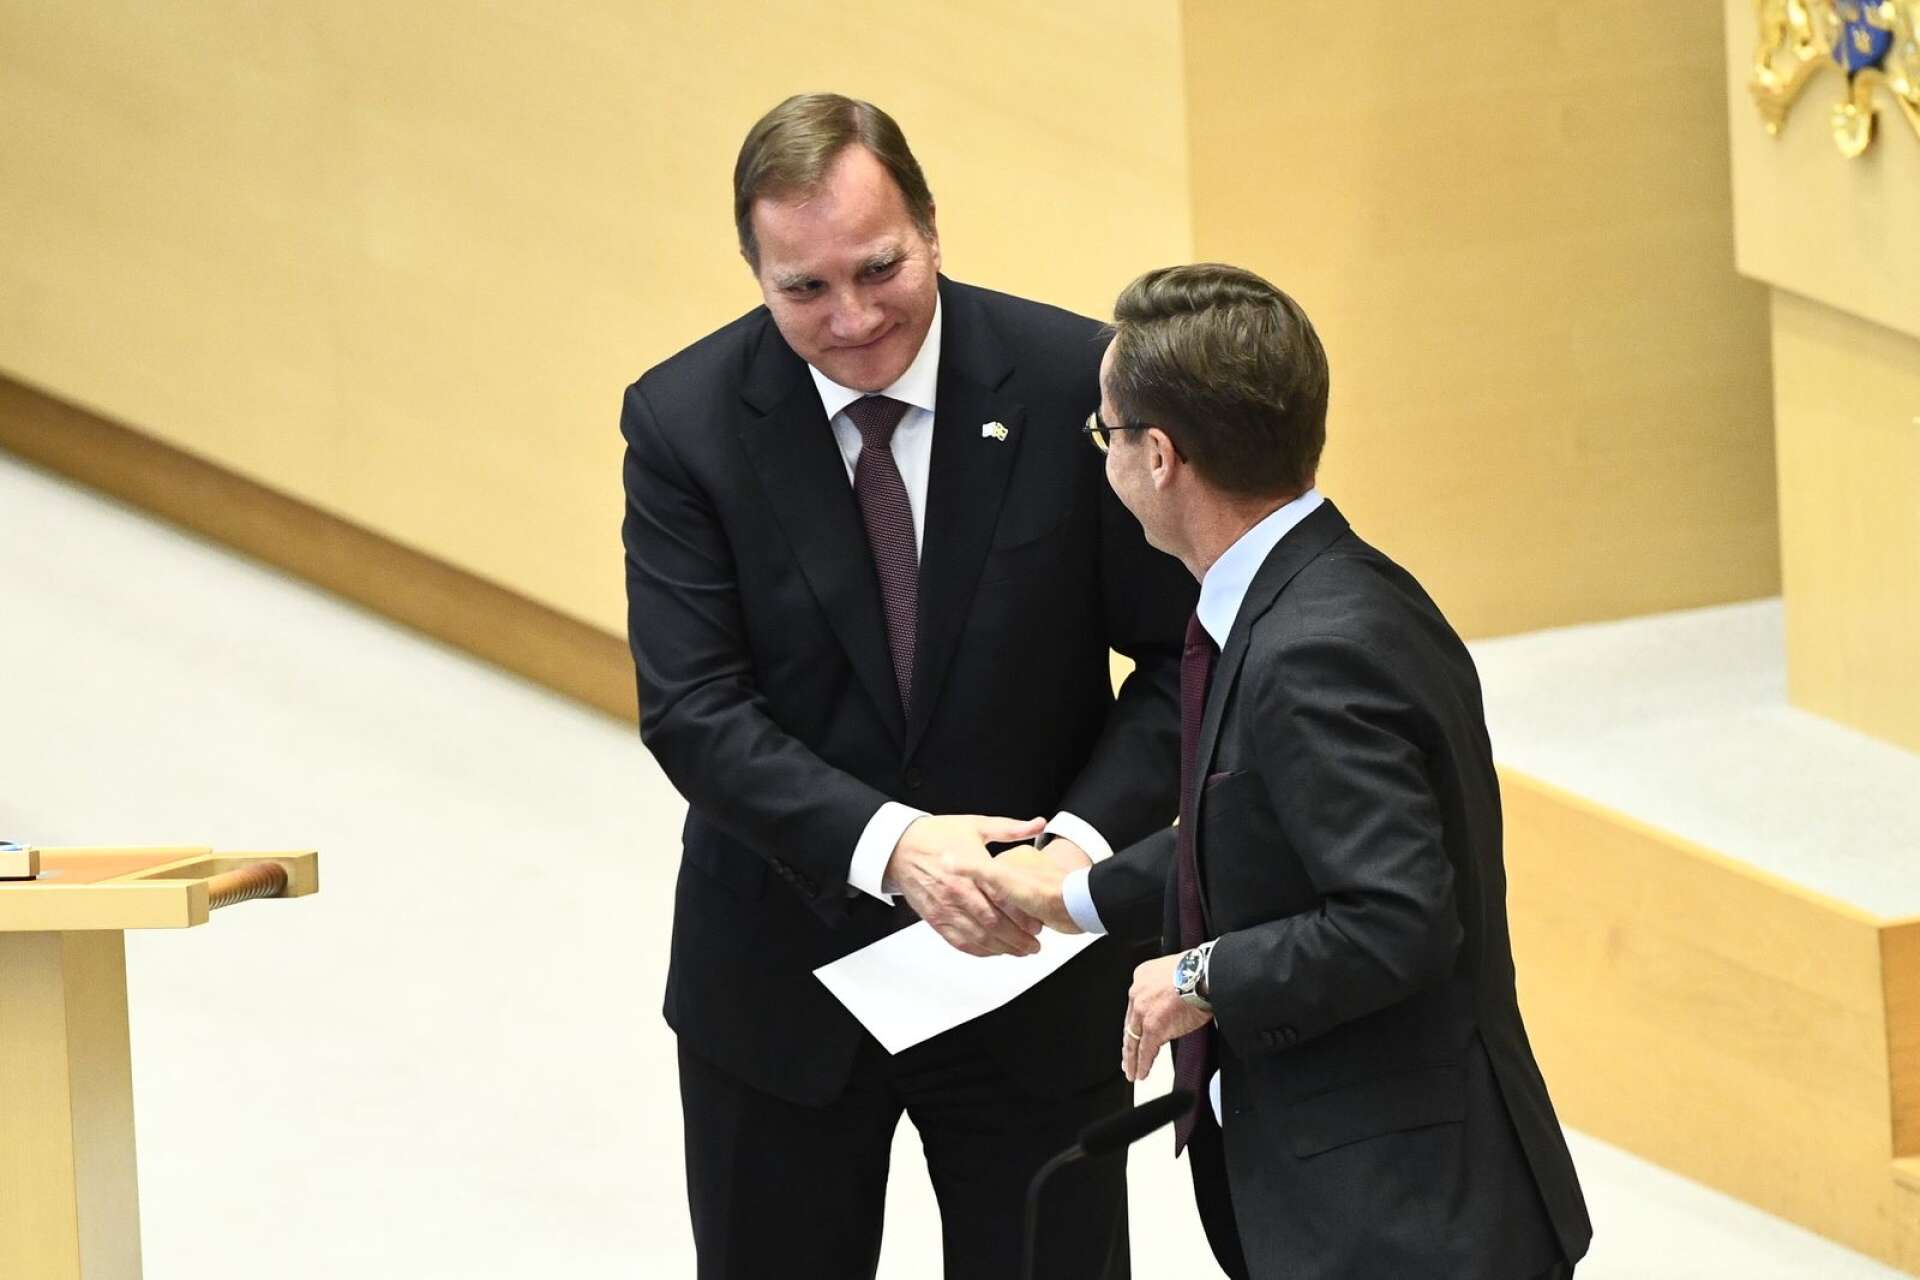 Insändarskribenten är glad över att Stefan Löfven avgår som statsminister.